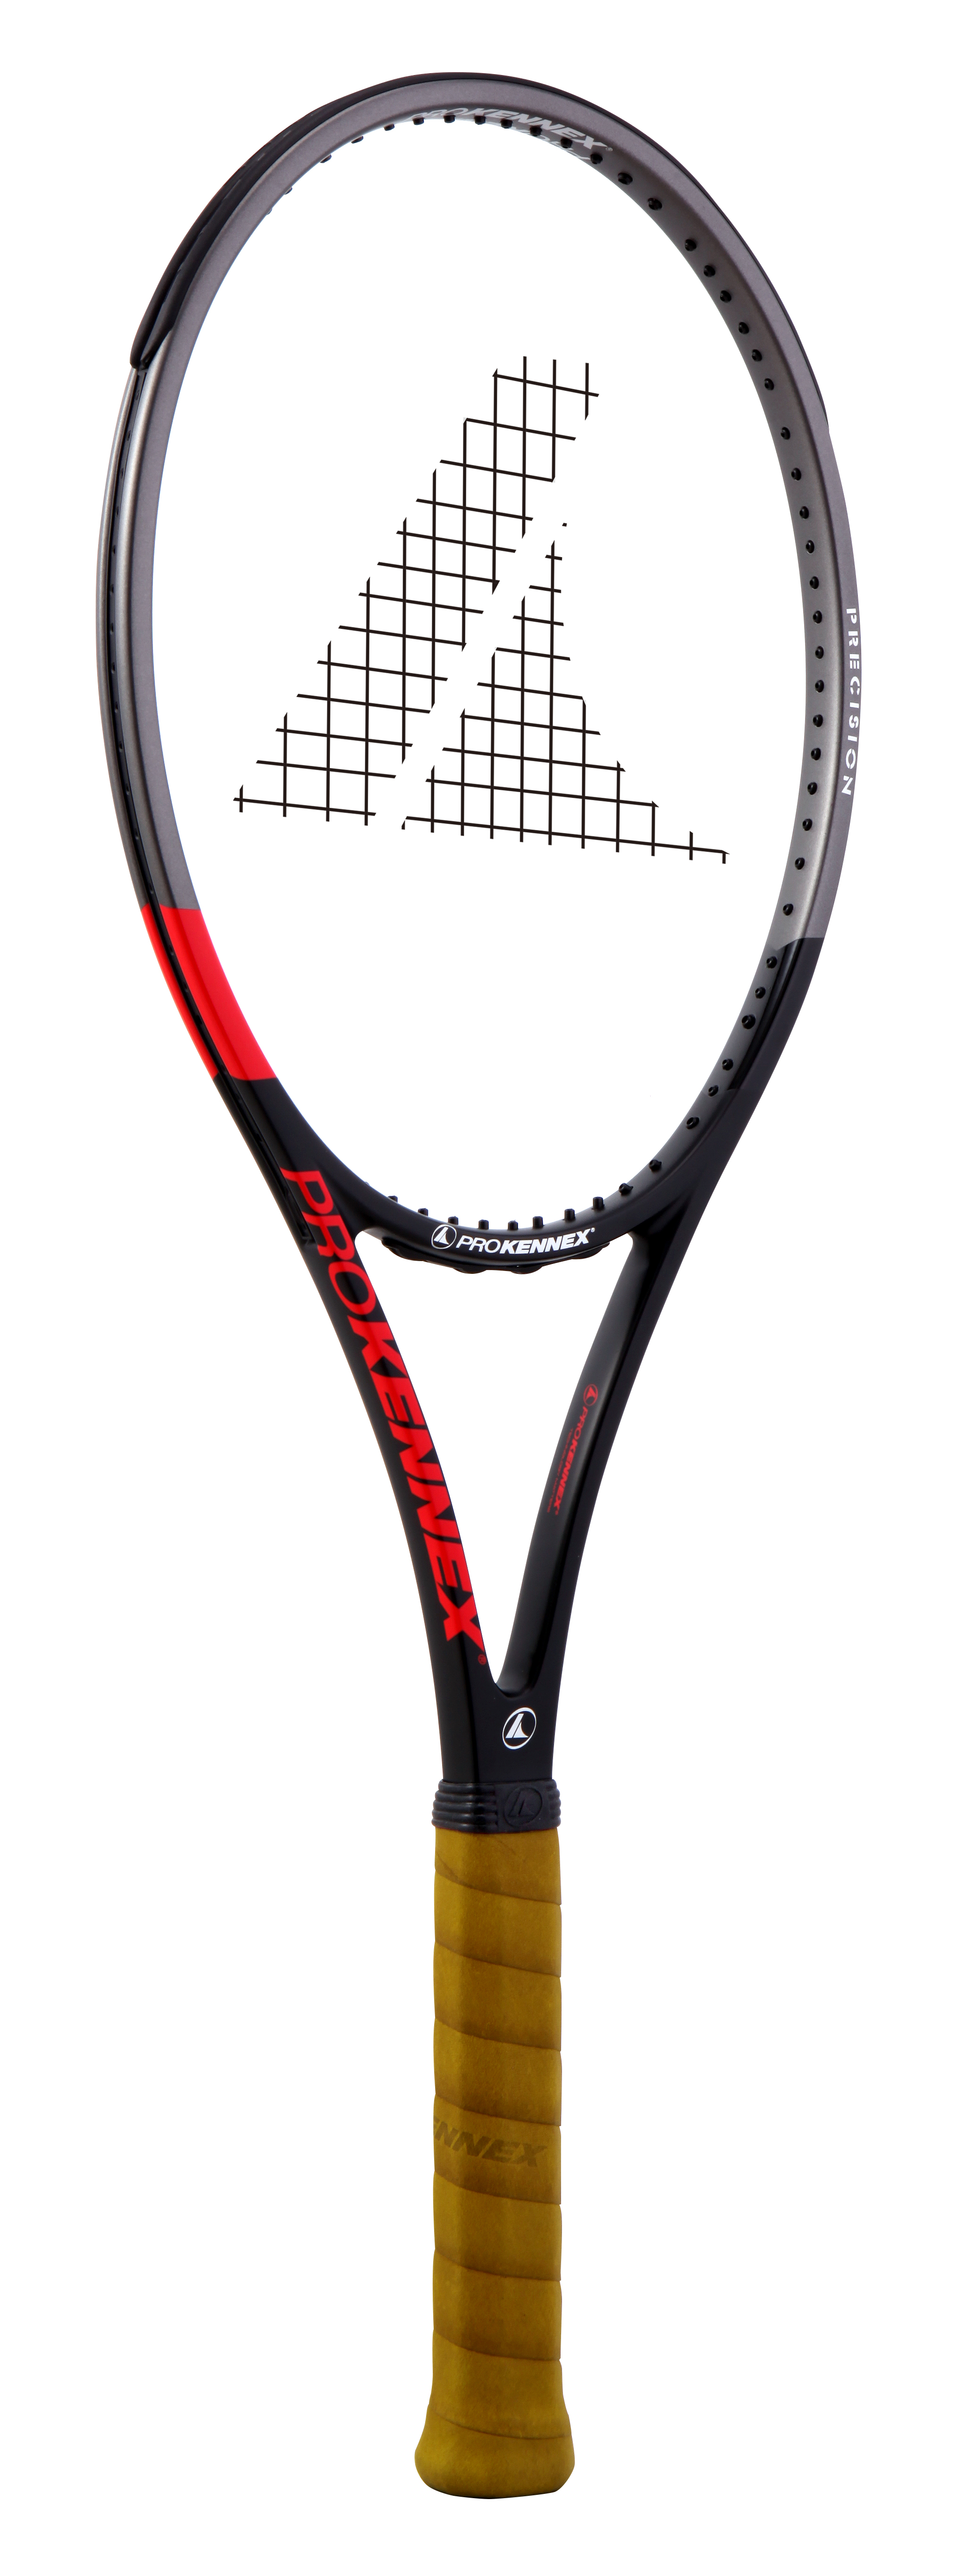 テニスラケット プロケネックス SR 117 (USL1)PROKENNEX SR 117